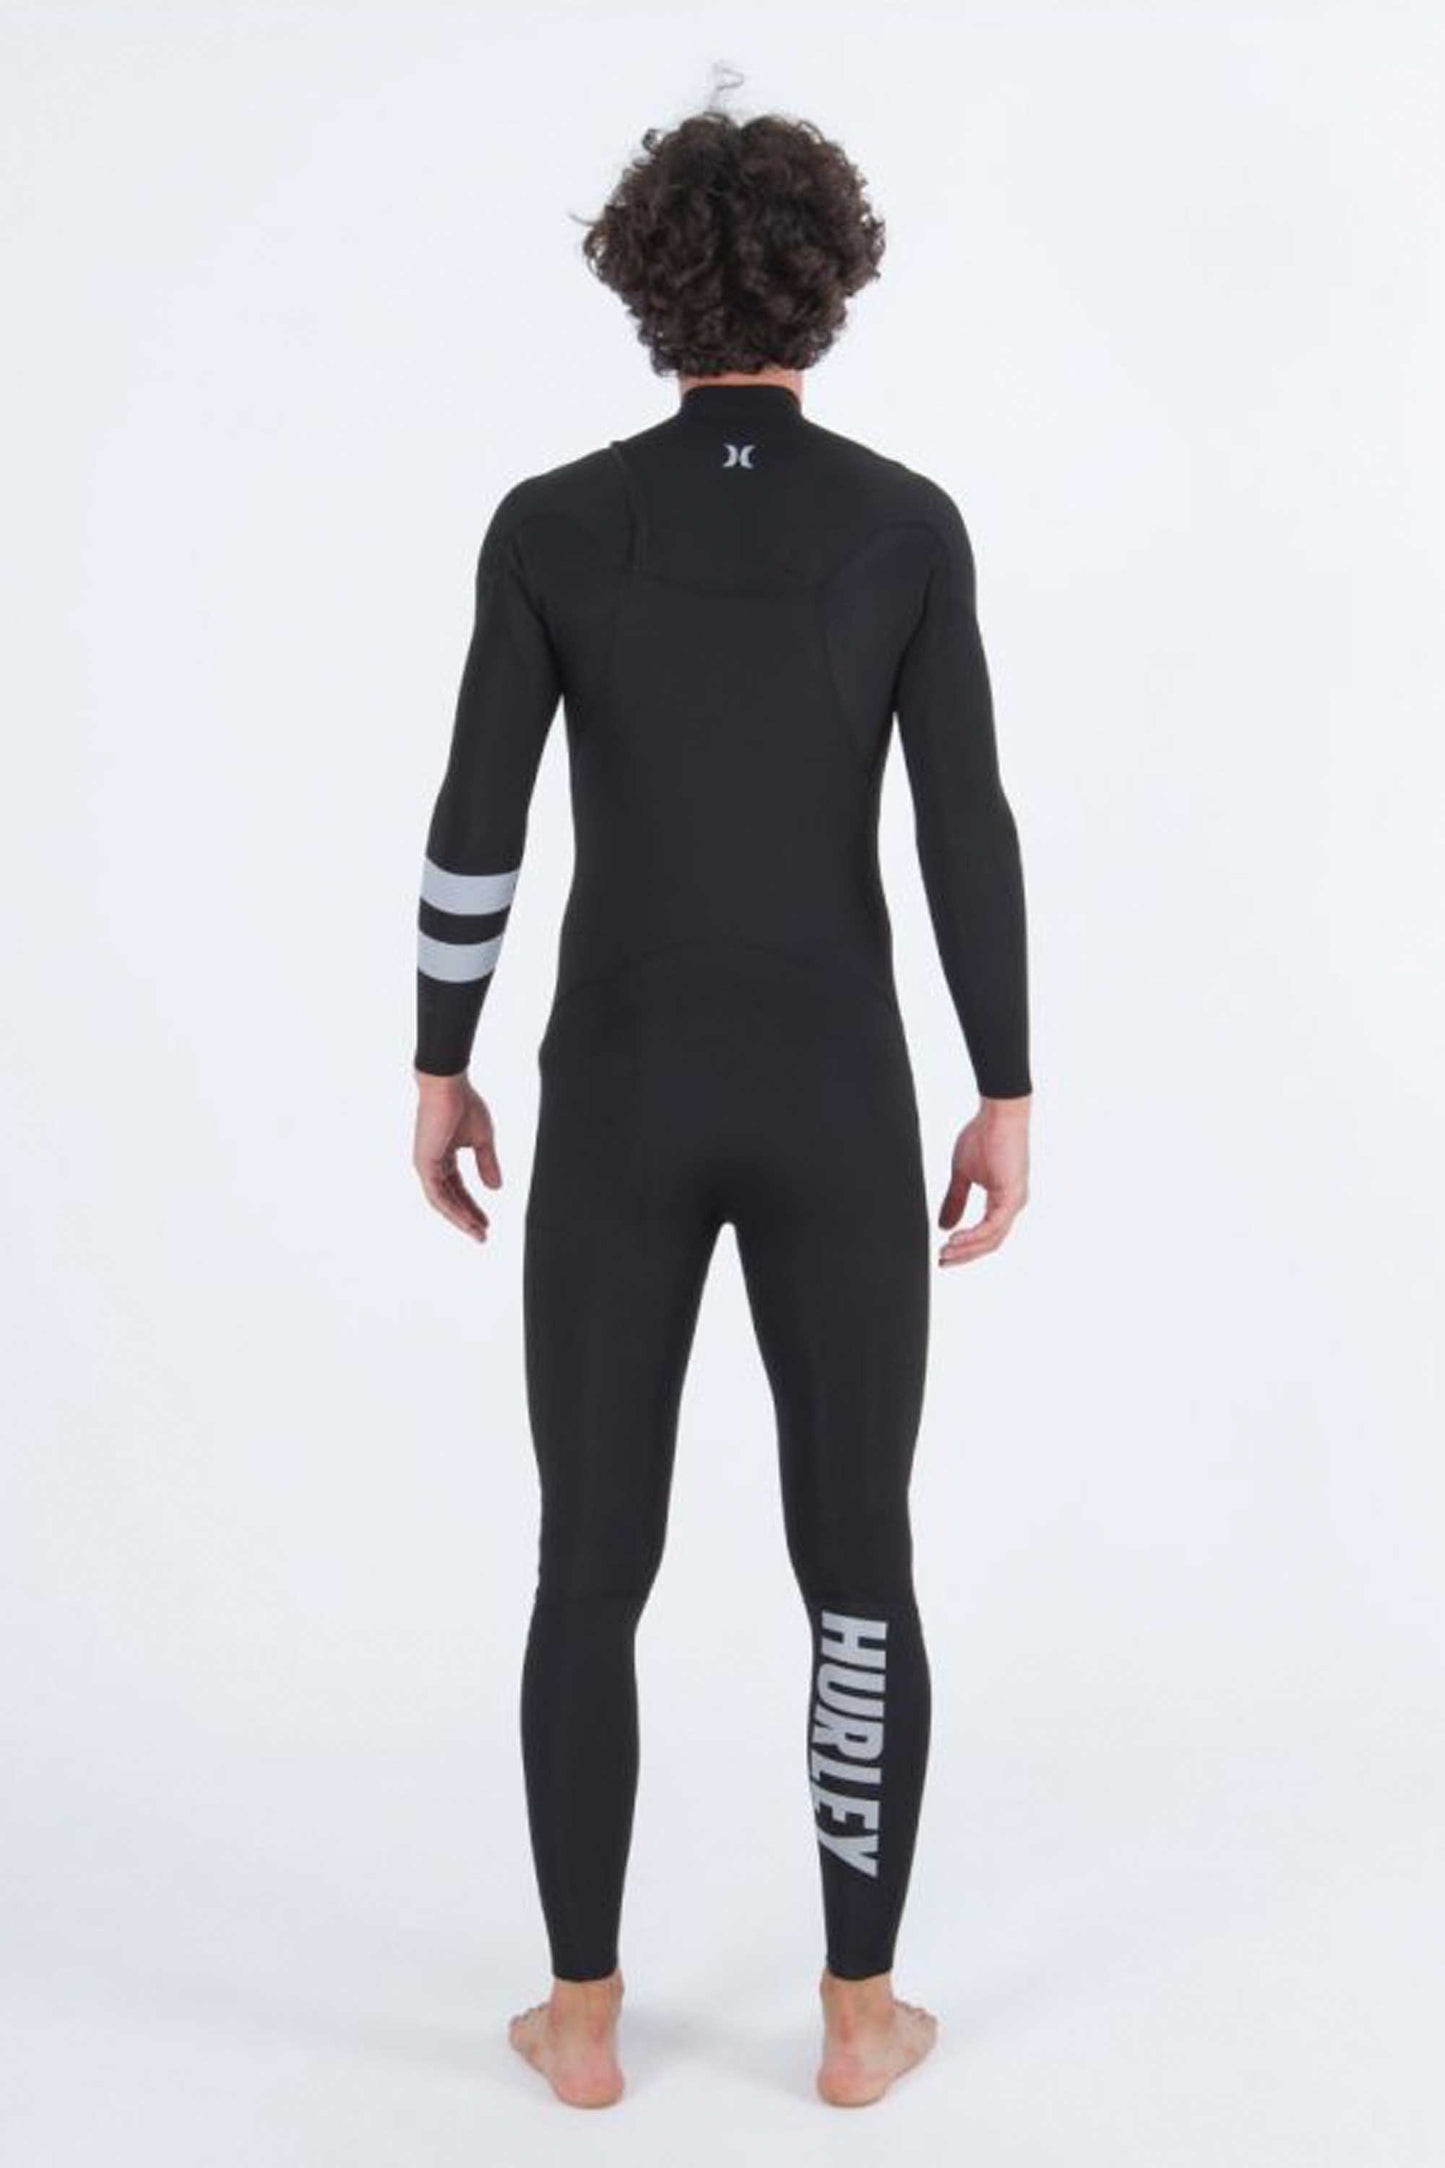 Pukas-Surf-Shop-Hurley-wetsuit-man-advant-3-2-fullsuit-black